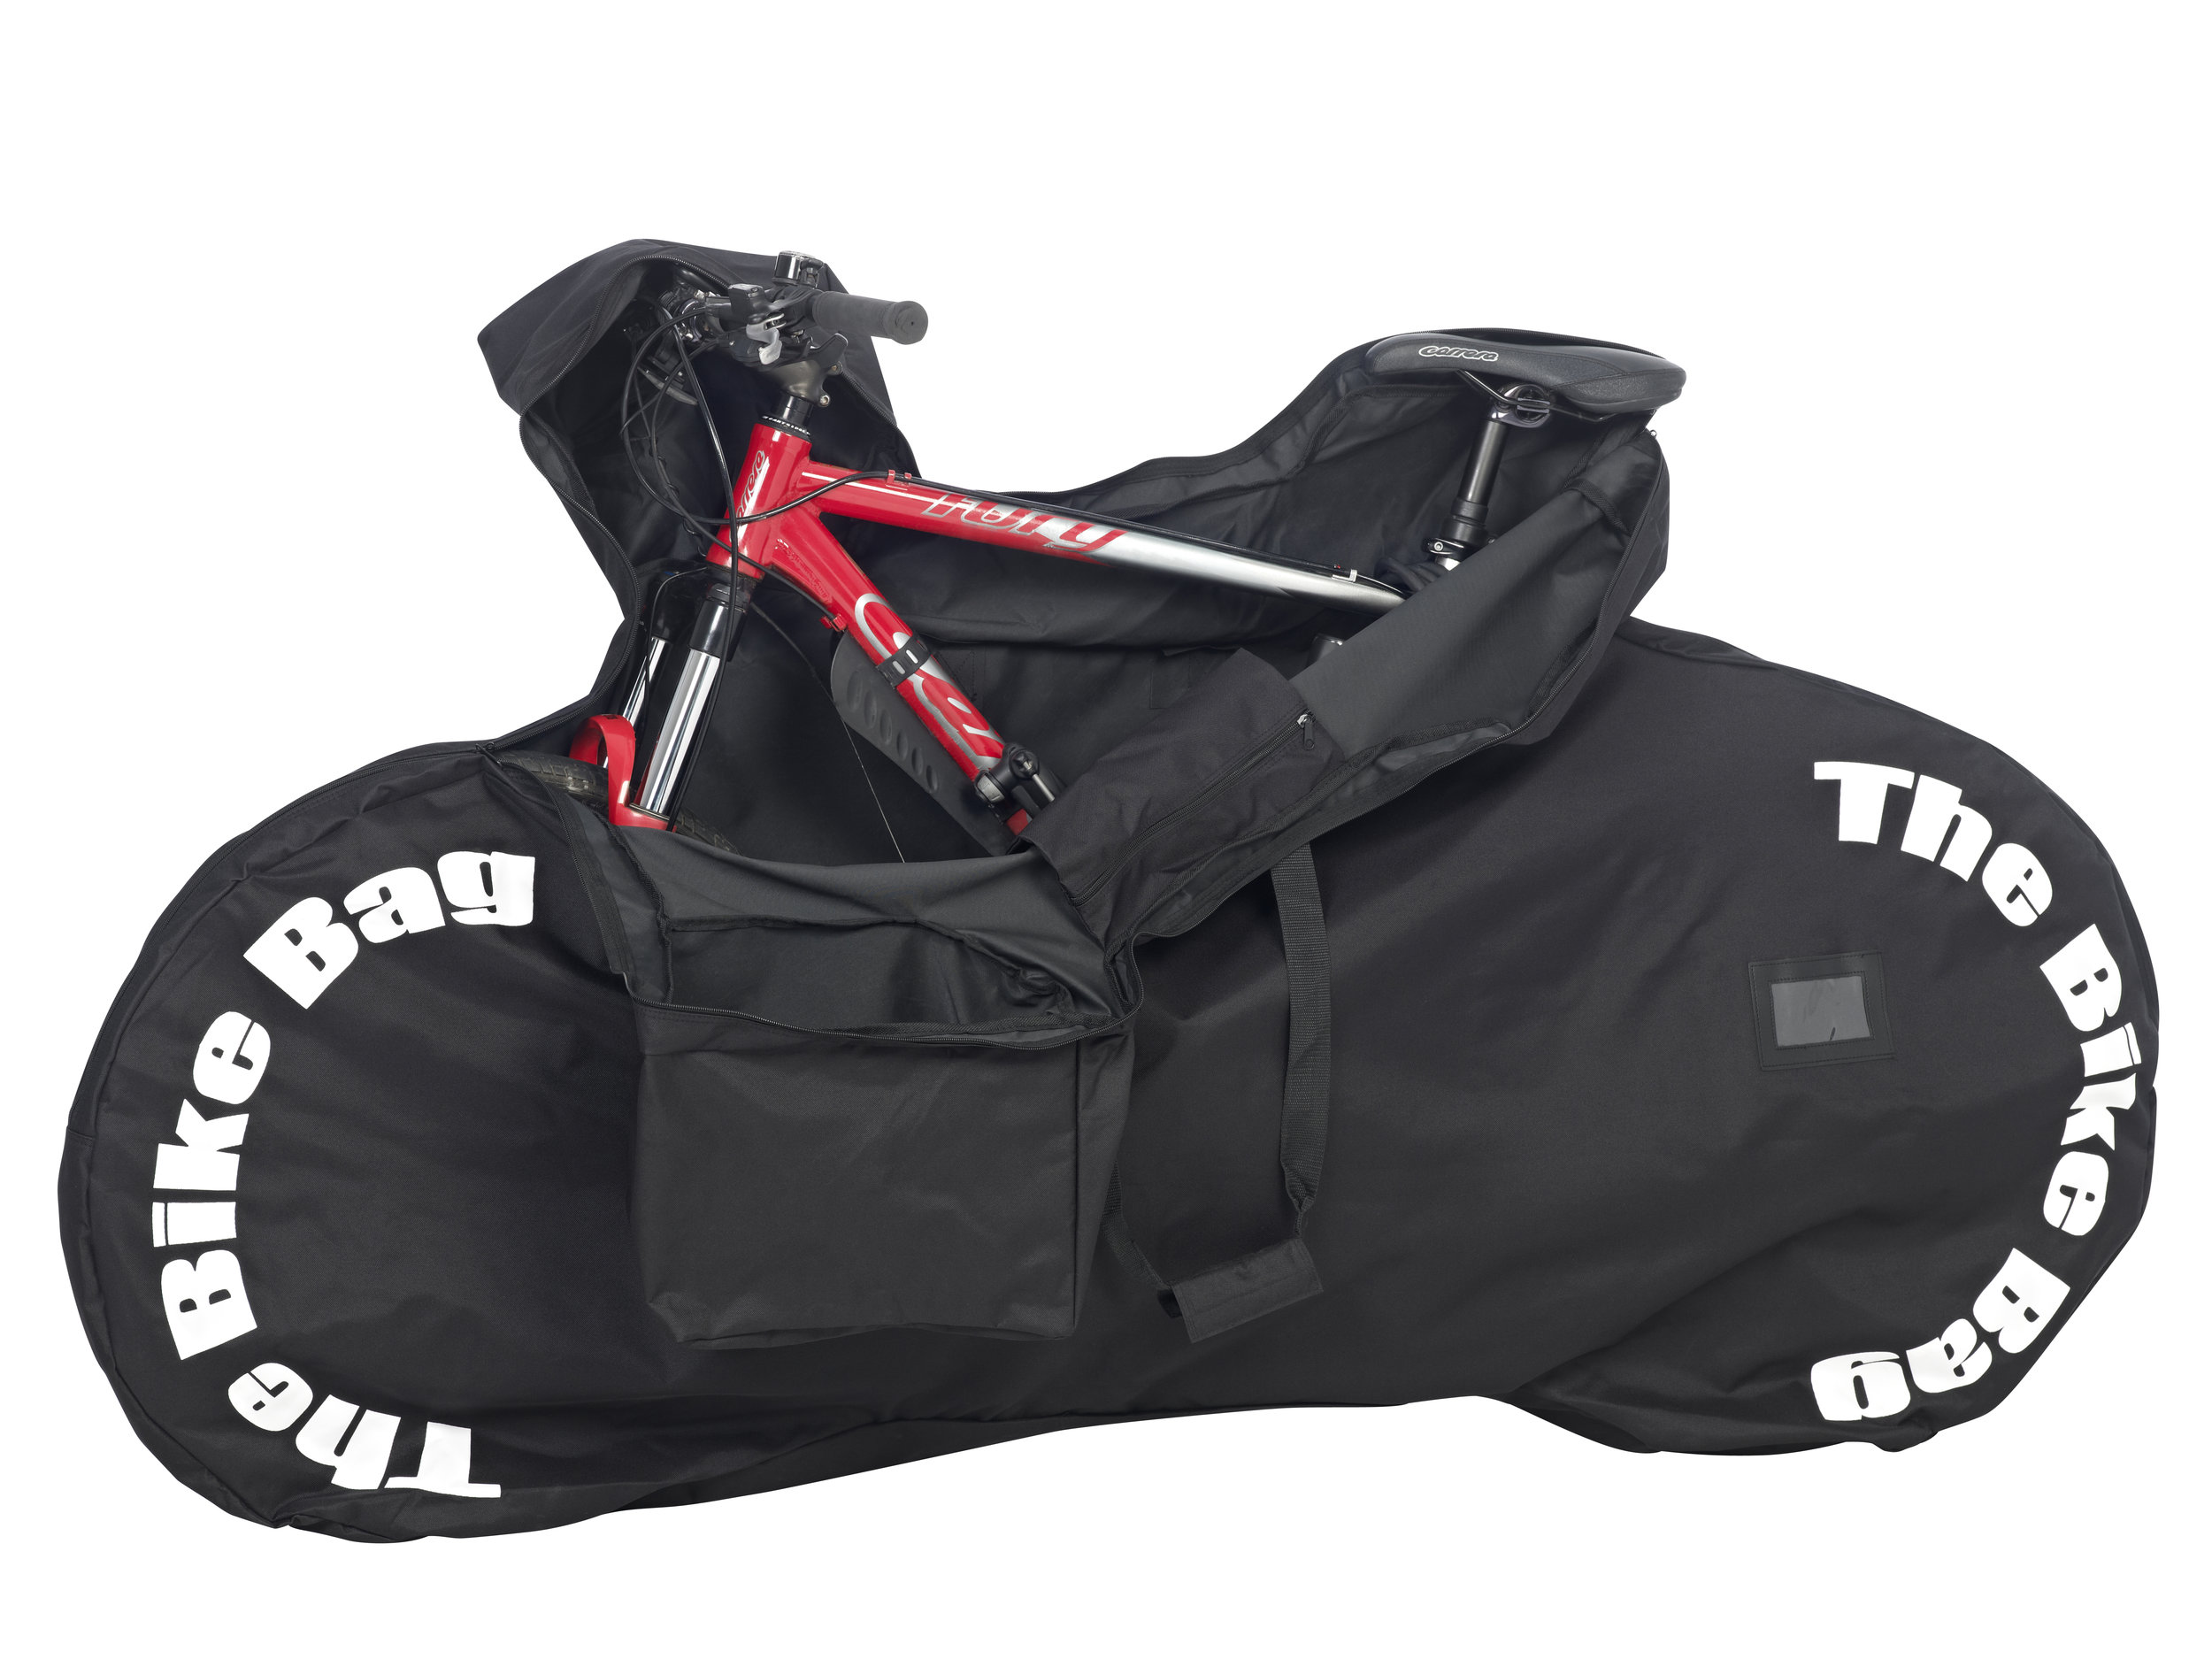 Standard Non-Padded Black Bike Bag